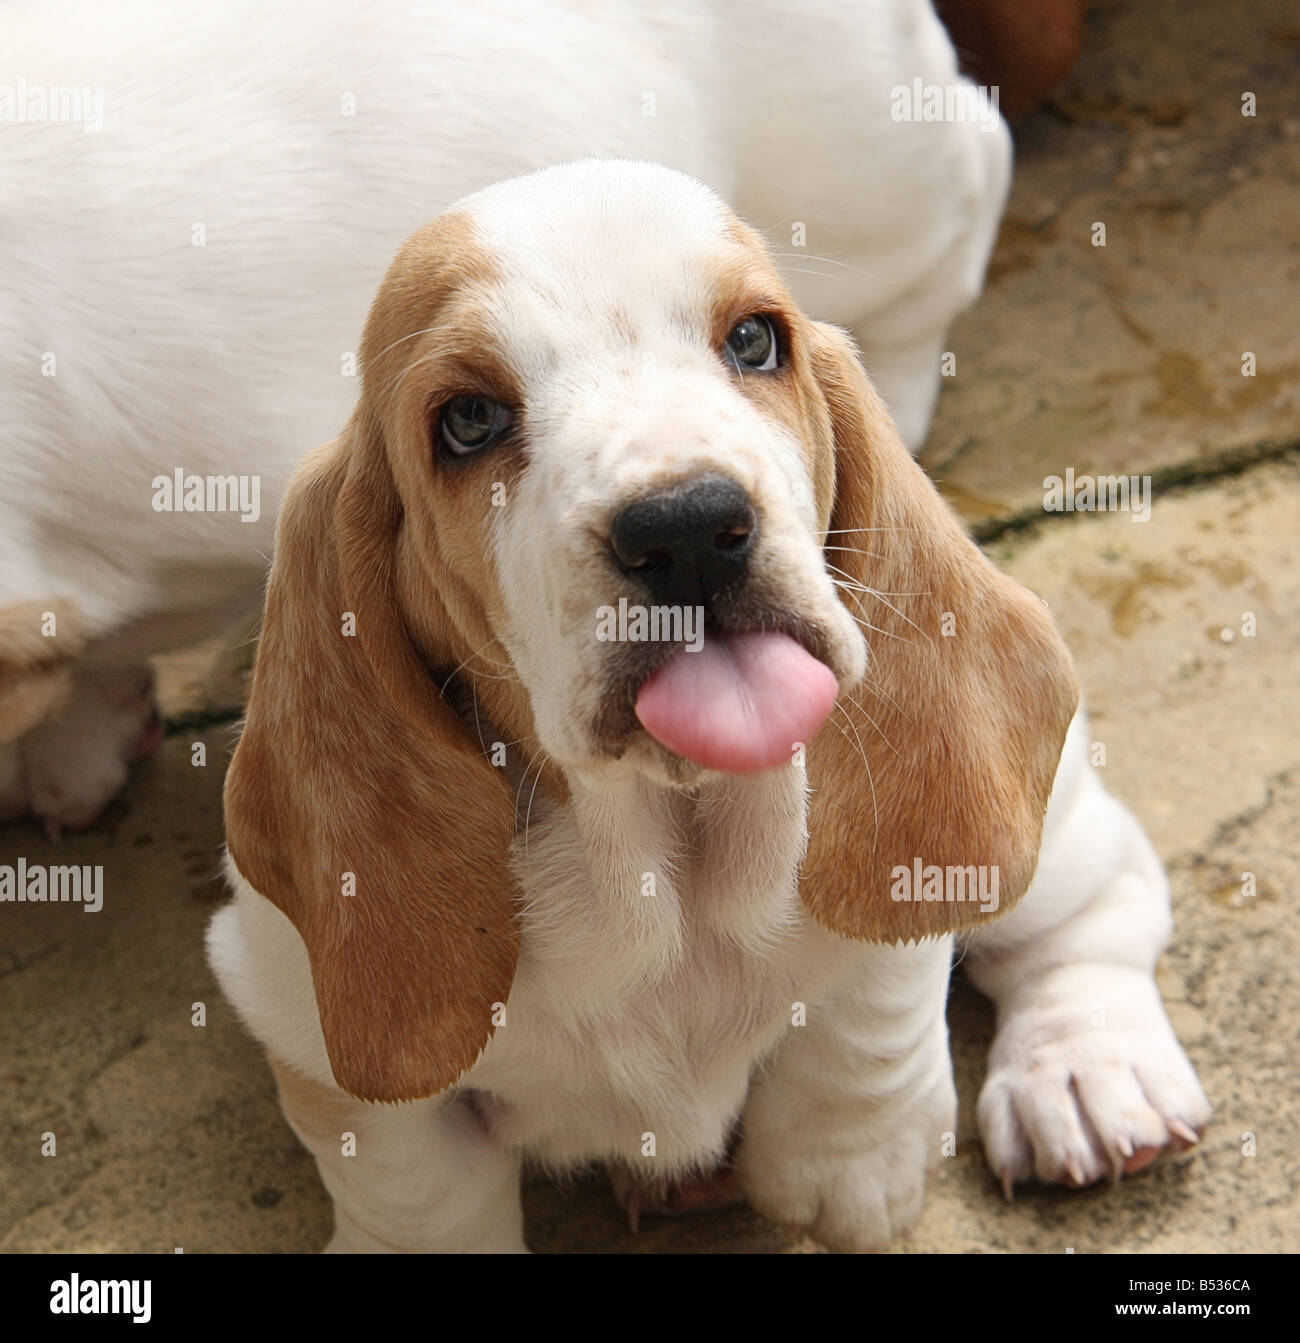 newborn basset hound